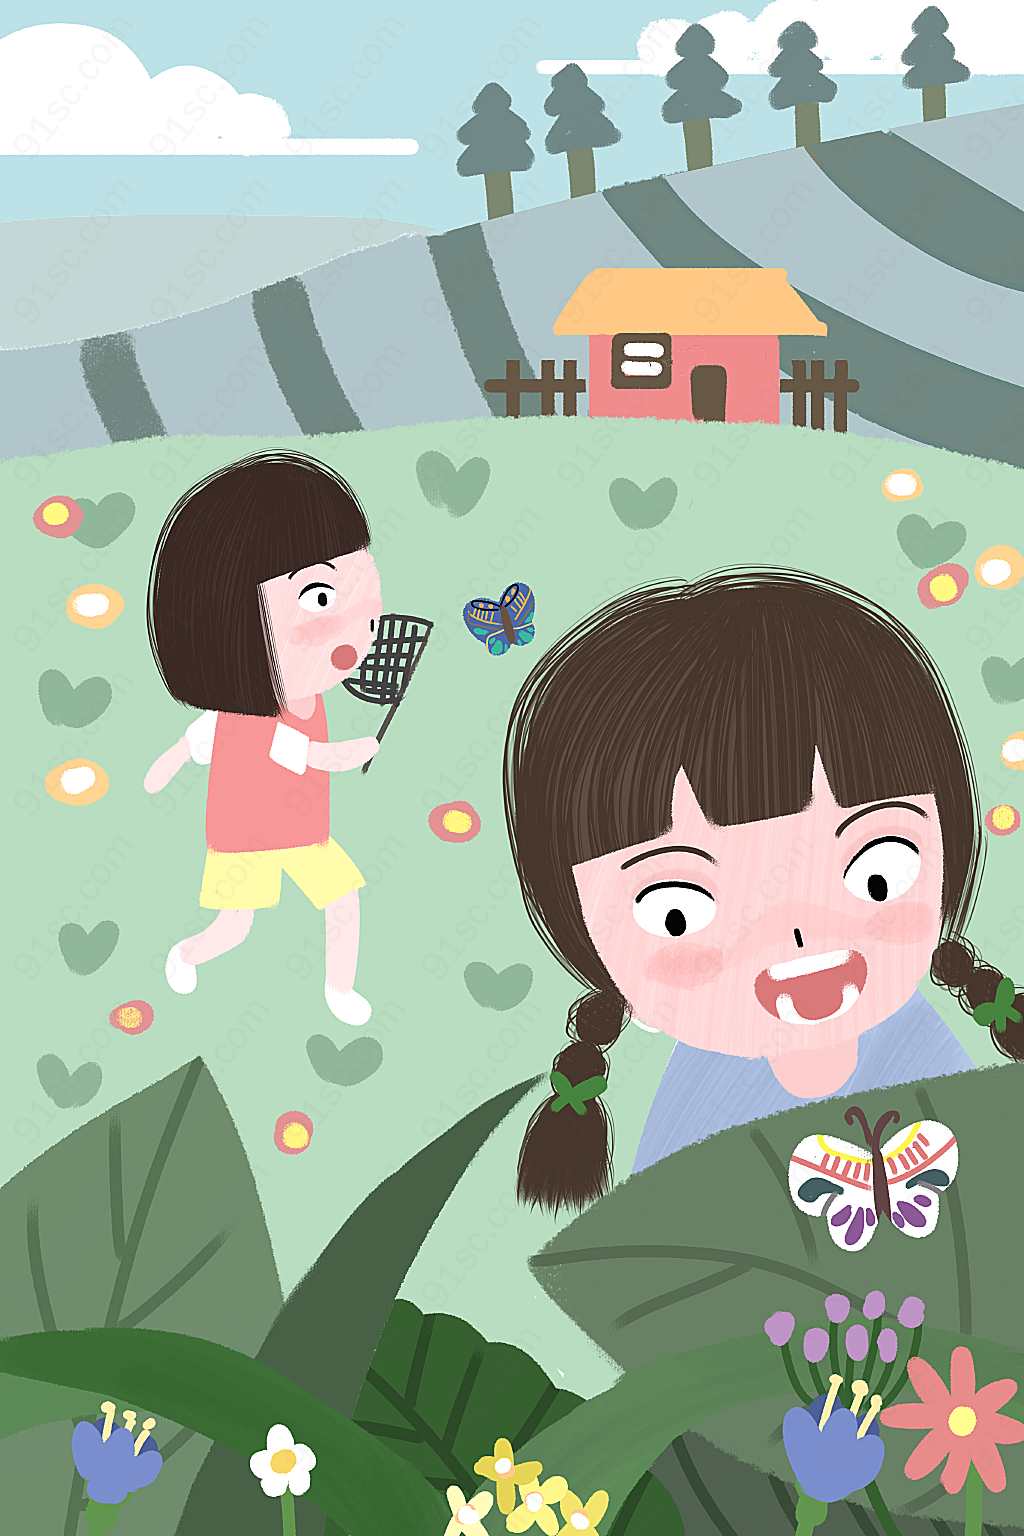 儿童节插画欣赏小朋友们在户外捕捉蝴蝶的精彩瞬间平面广告下载